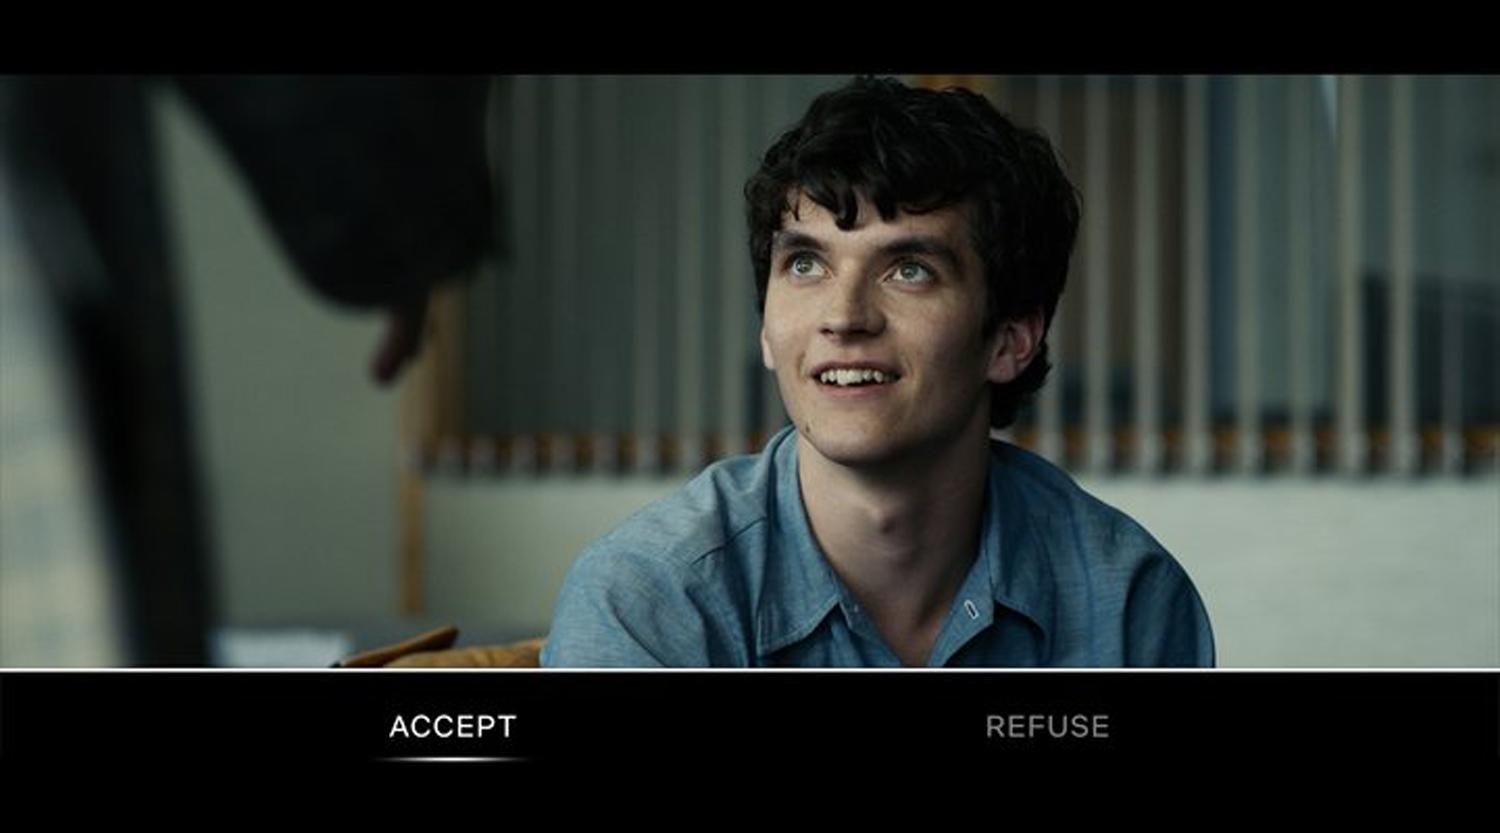 Black Mirror volvió con una película interactiva: el público decide qué hacer con el protagonista